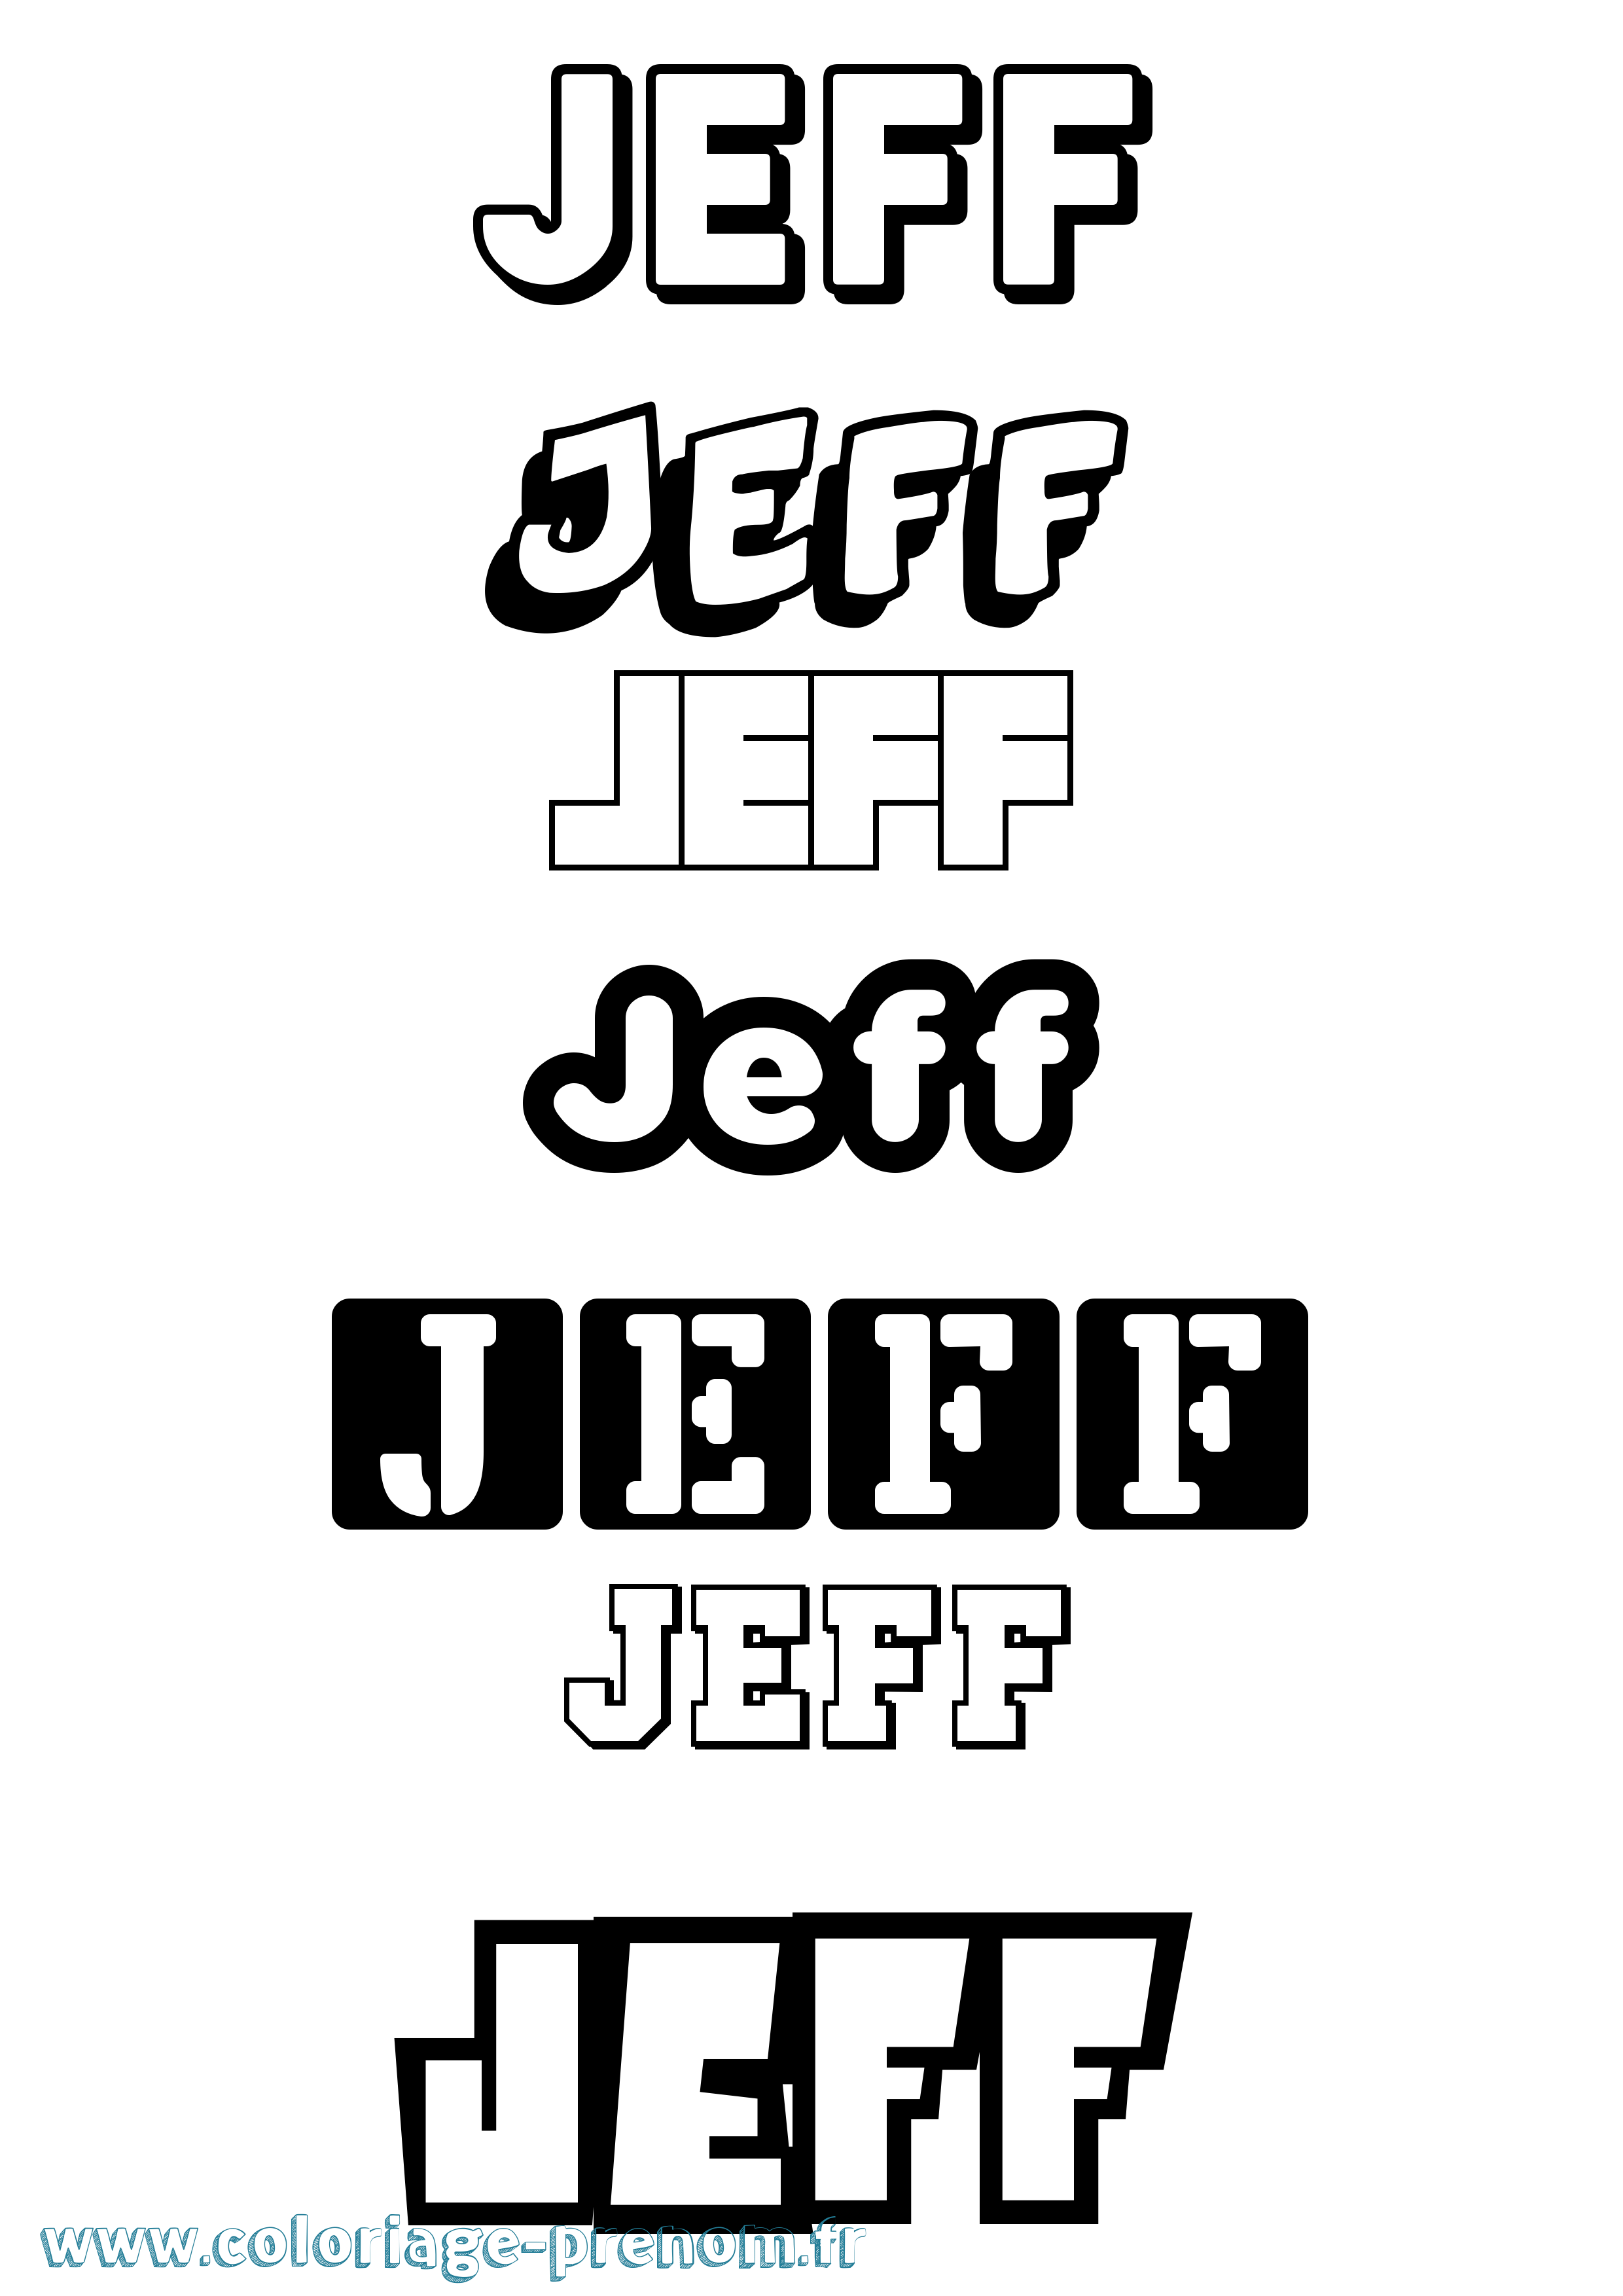 Coloriage prénom Jeff Simple